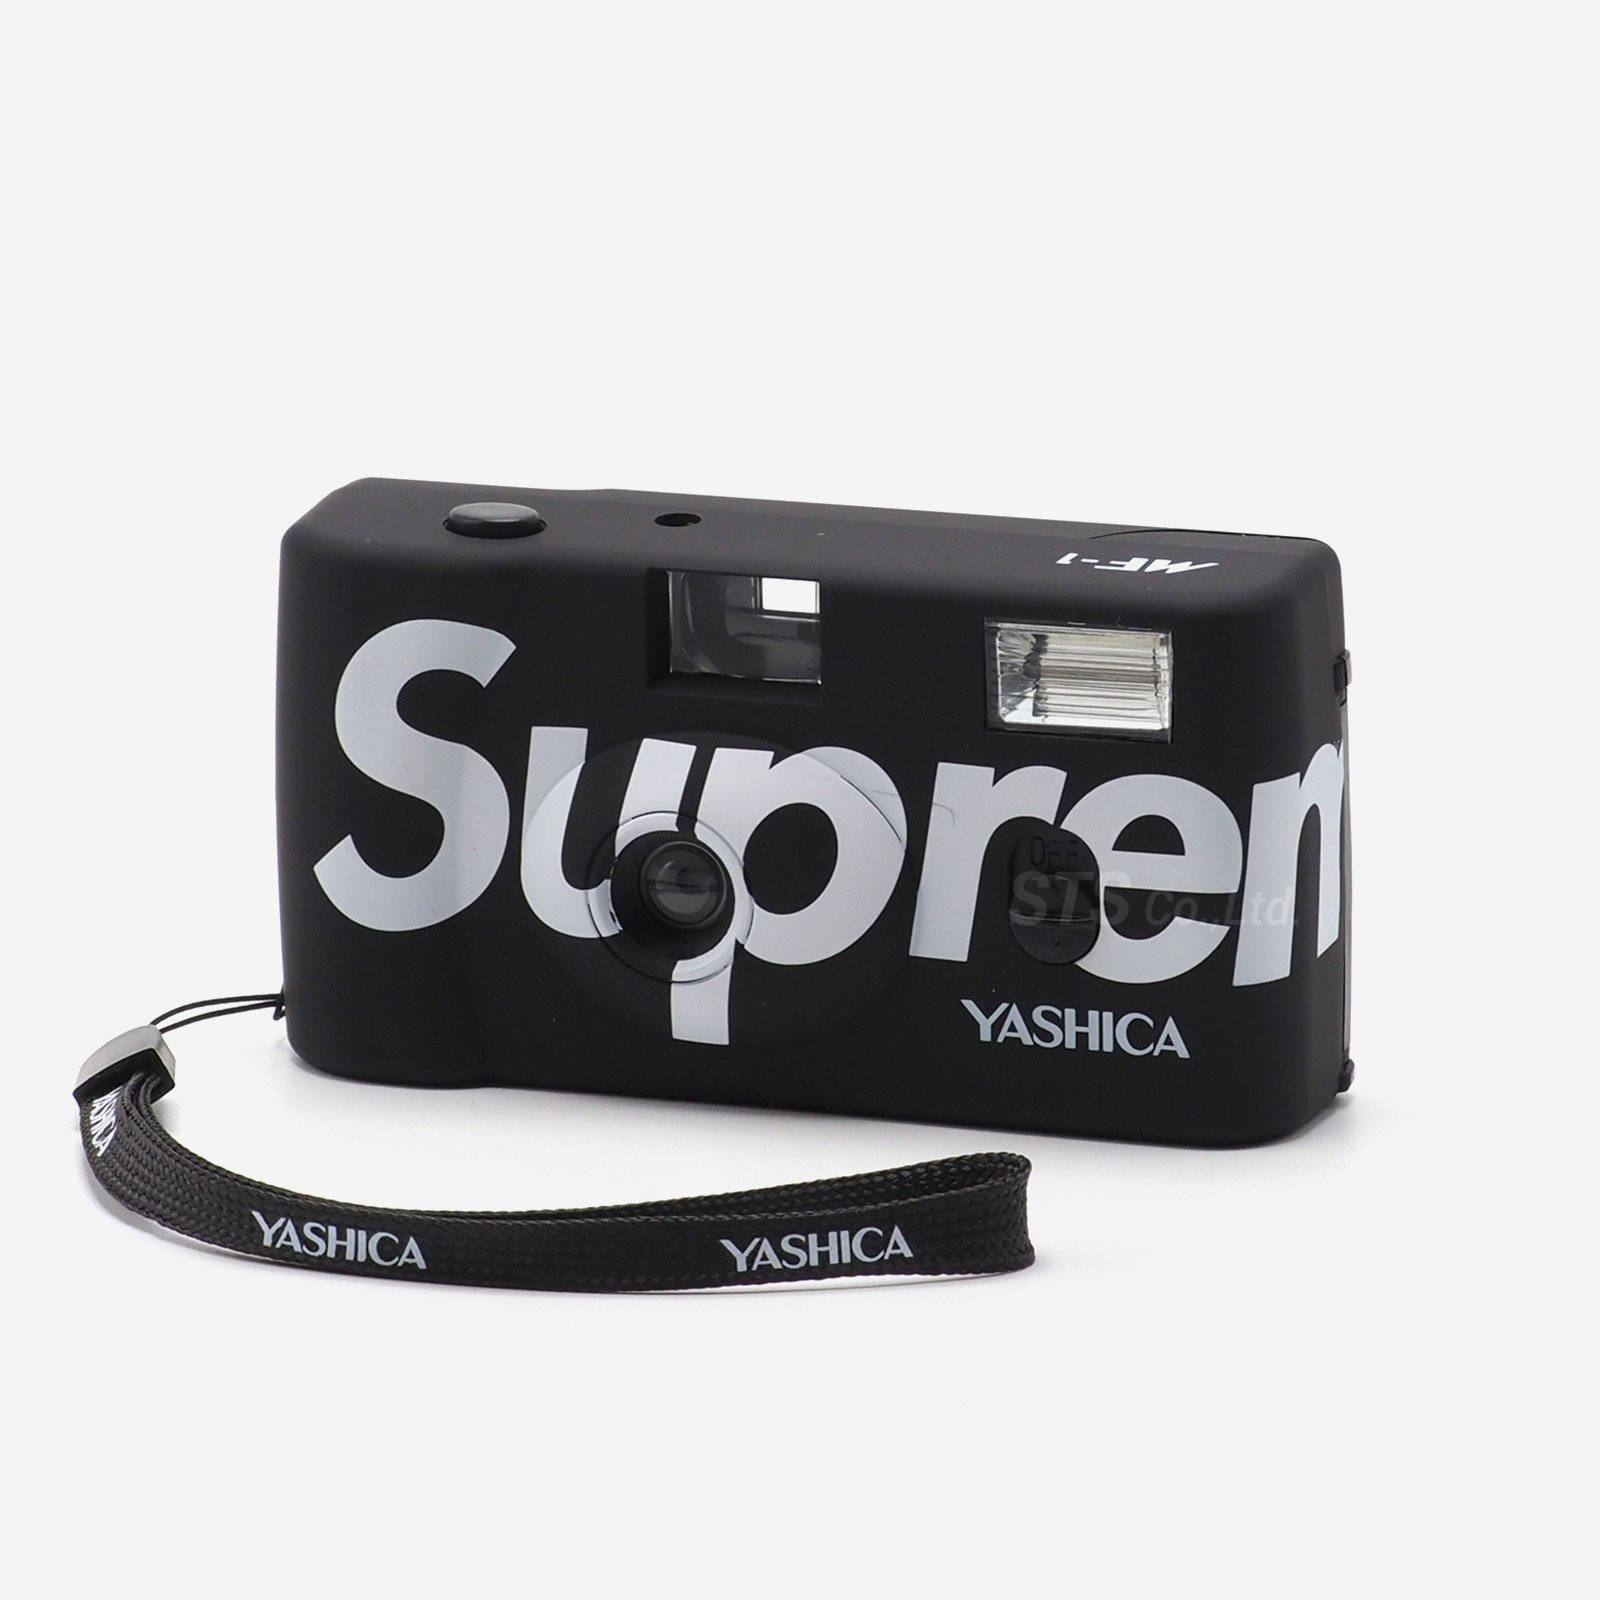 Supreme/Yashica MF-1 Camera - UG.SHAFT